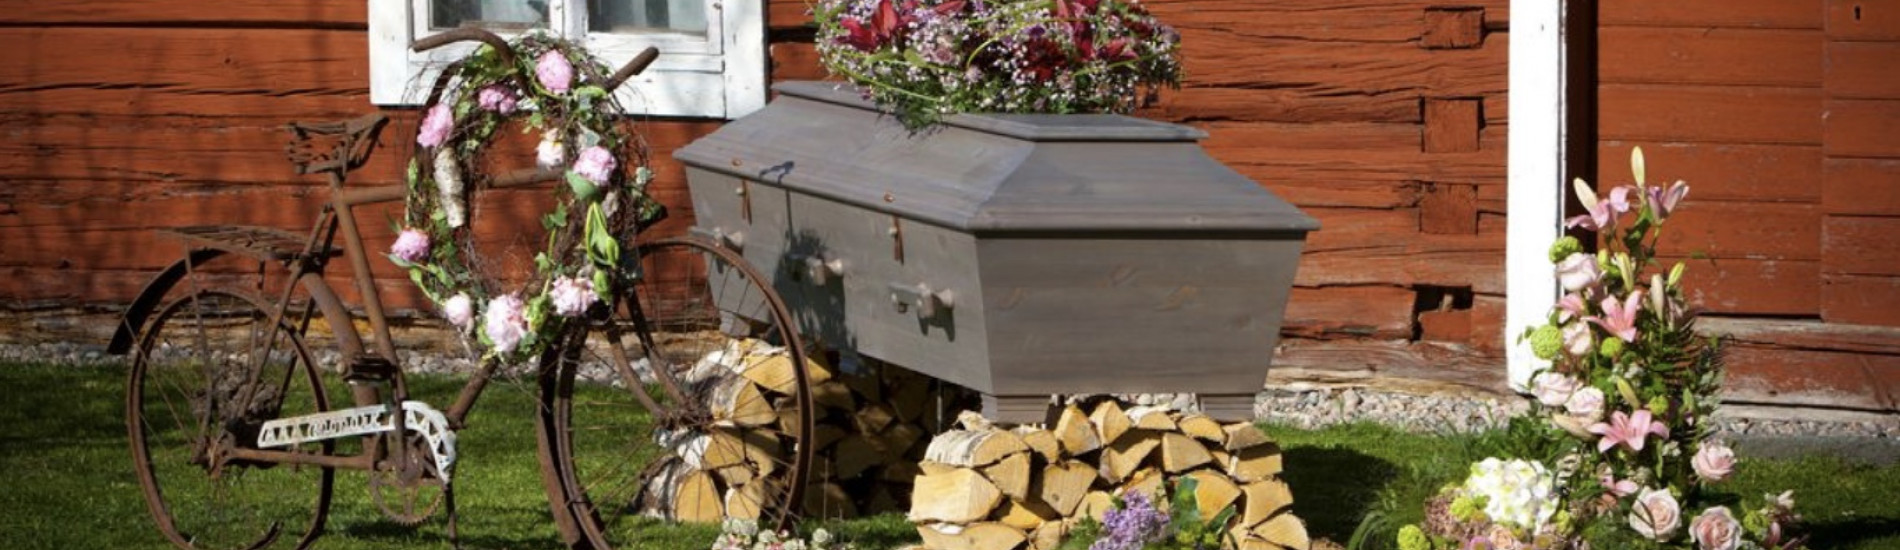 Borgerlig begravning kostnad